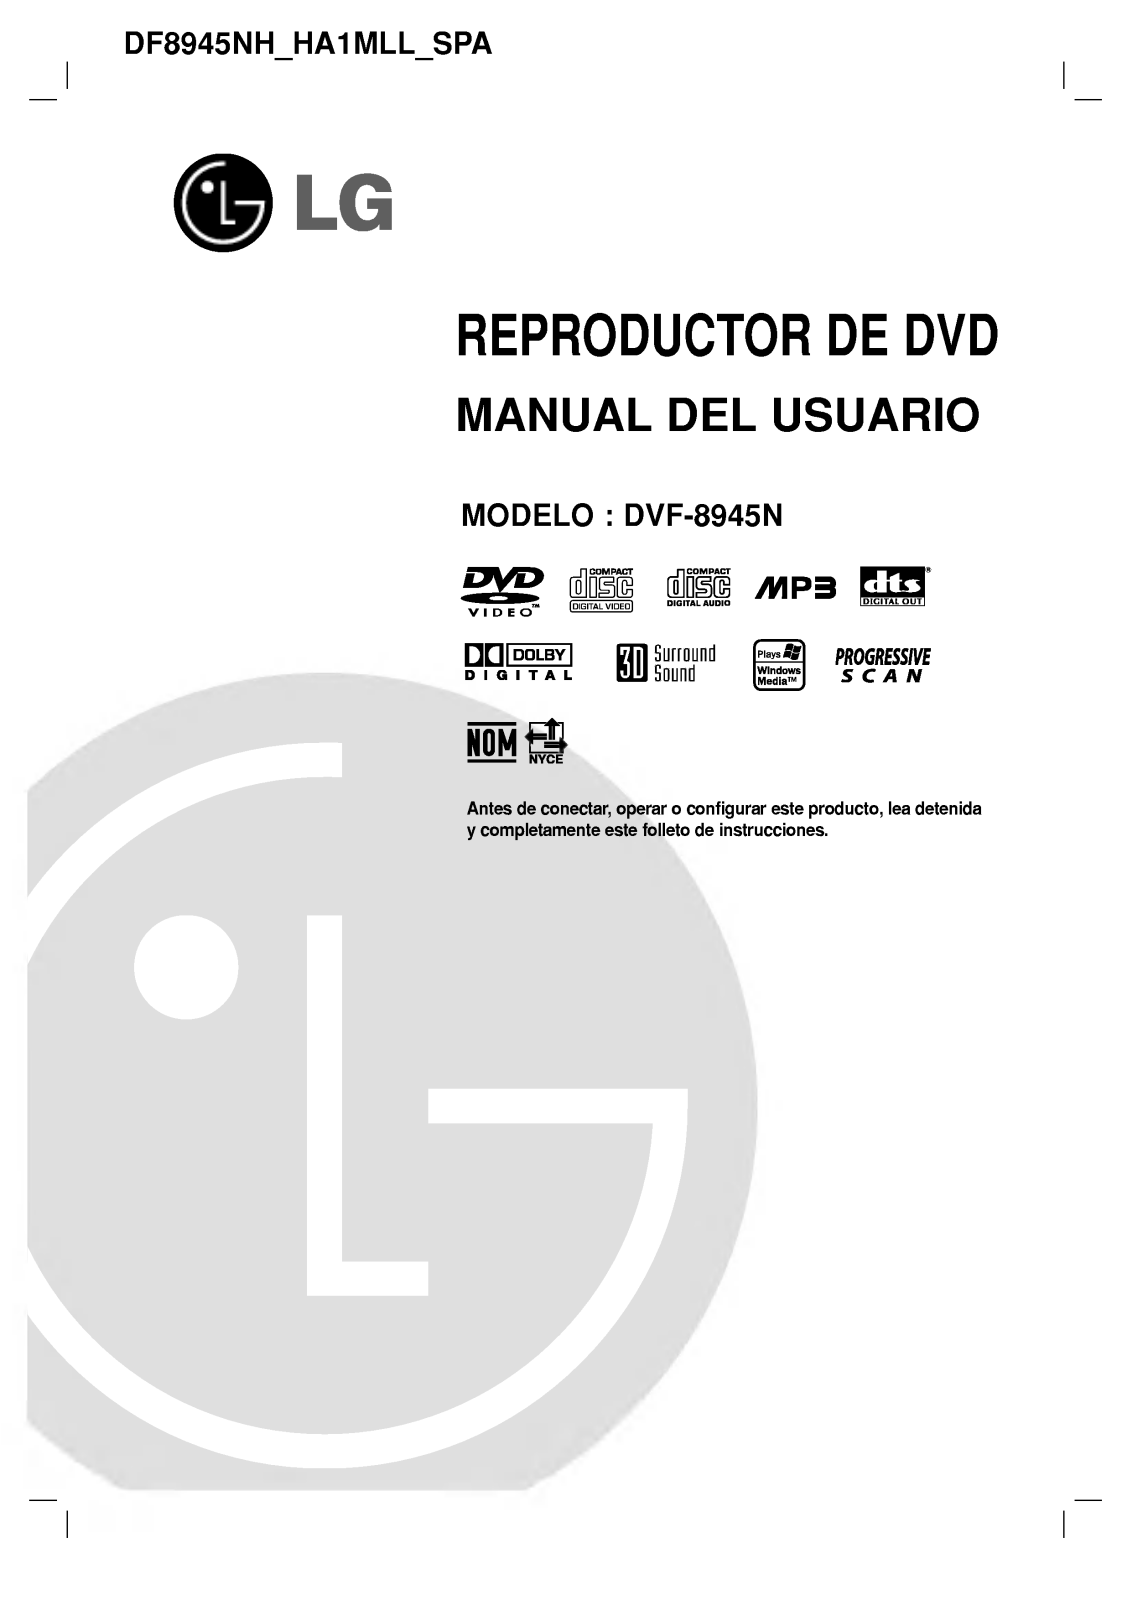 LG DF8945NH Owner's Manual